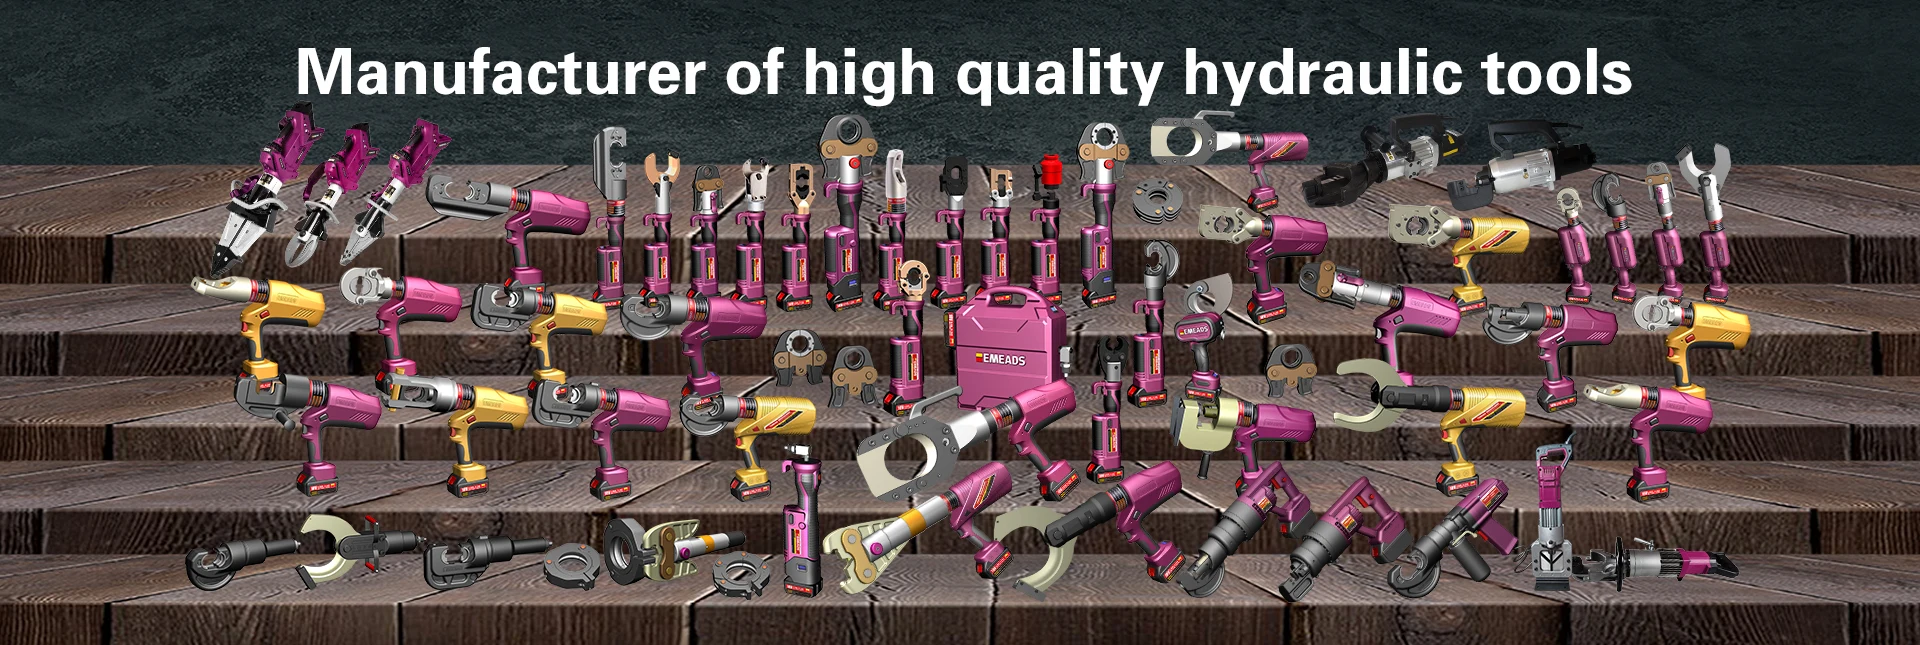 Výrobci hydraulických řezných nástrojů